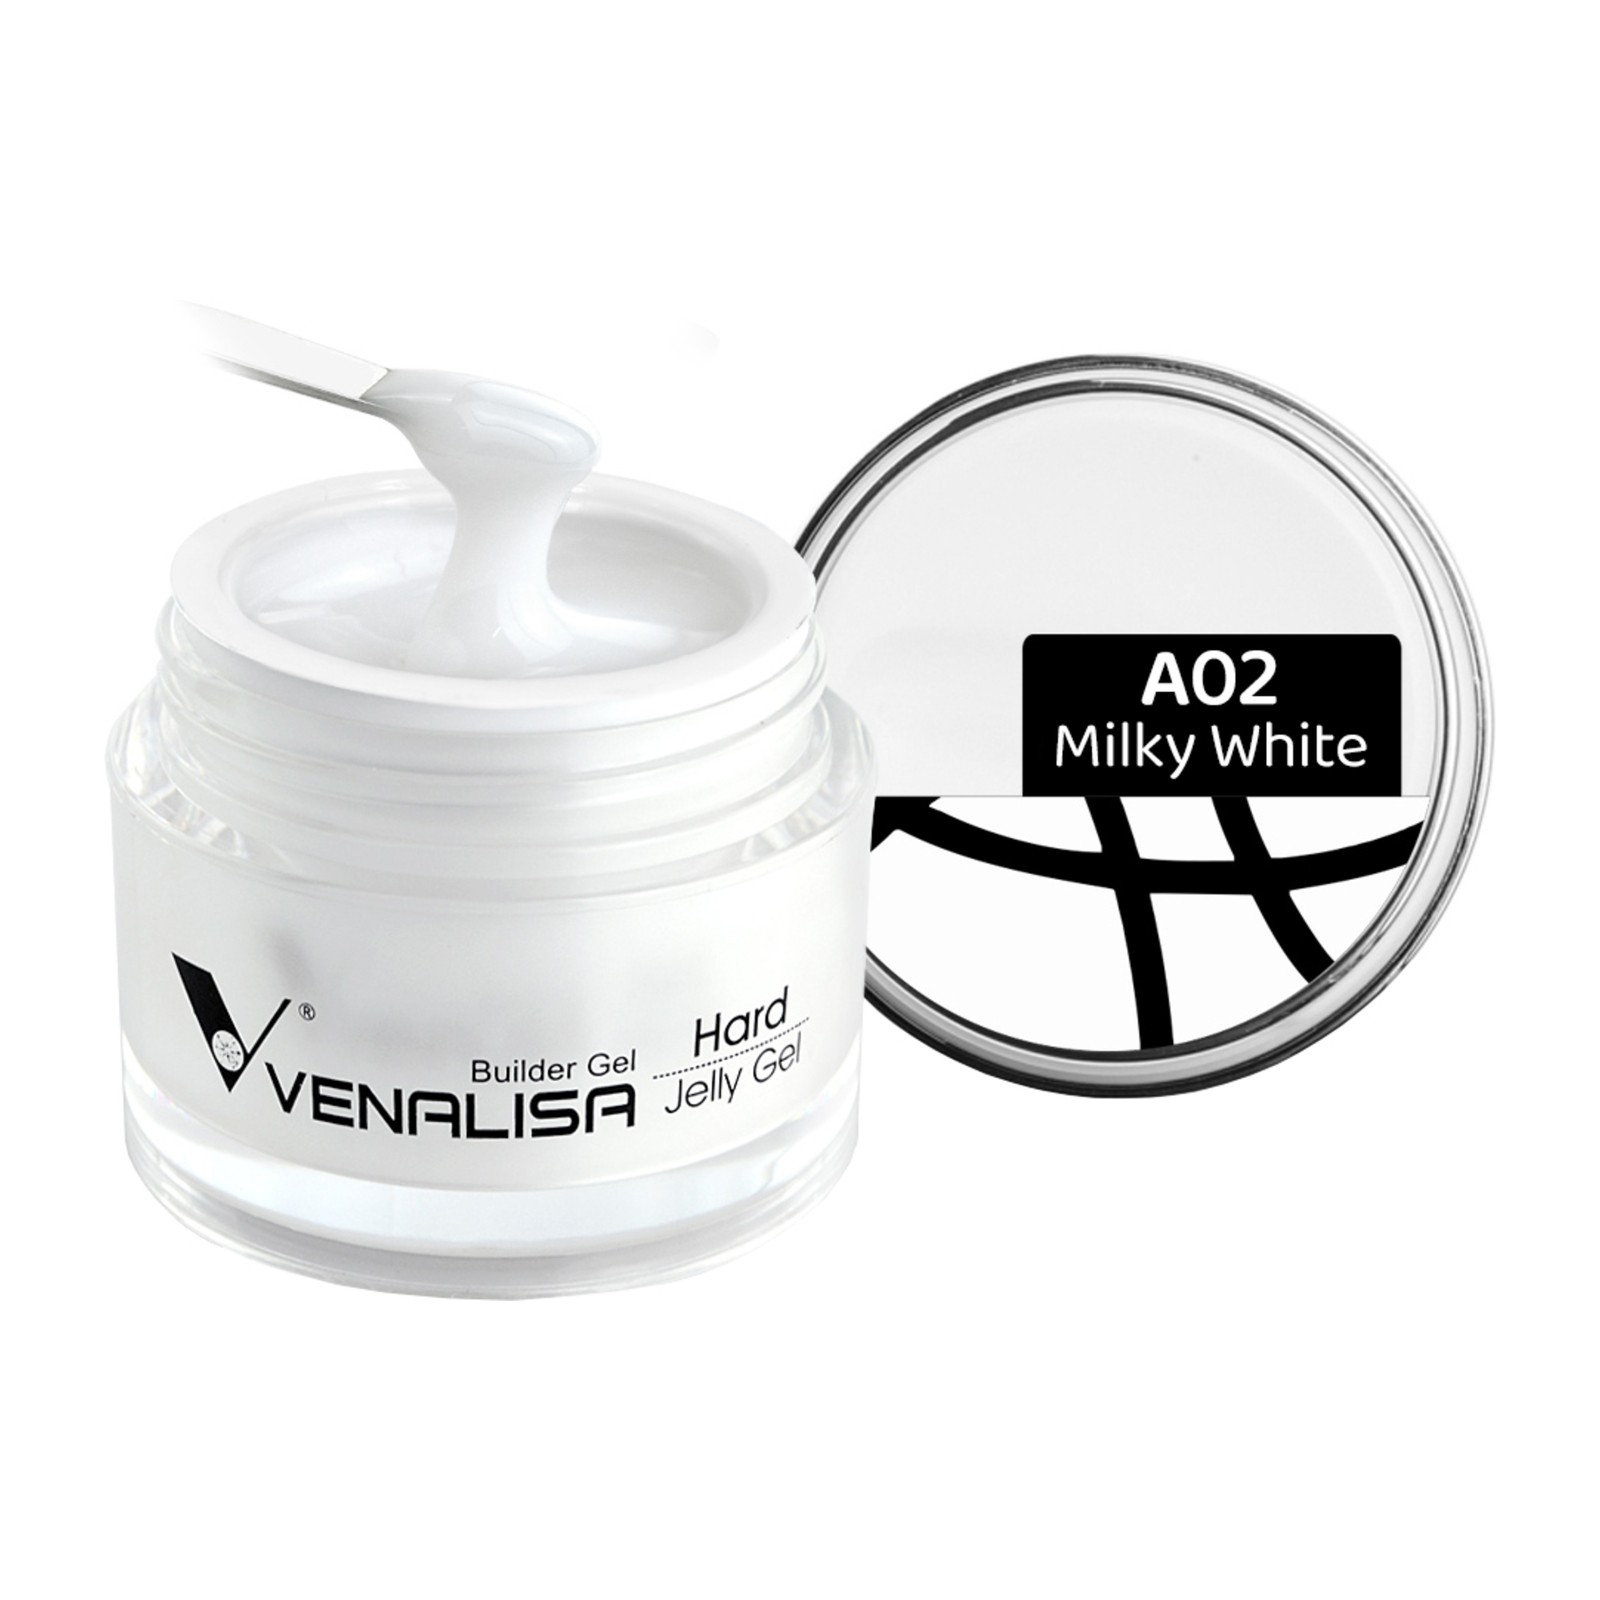 Venalisa -  A02 Piena balts -  15 ml